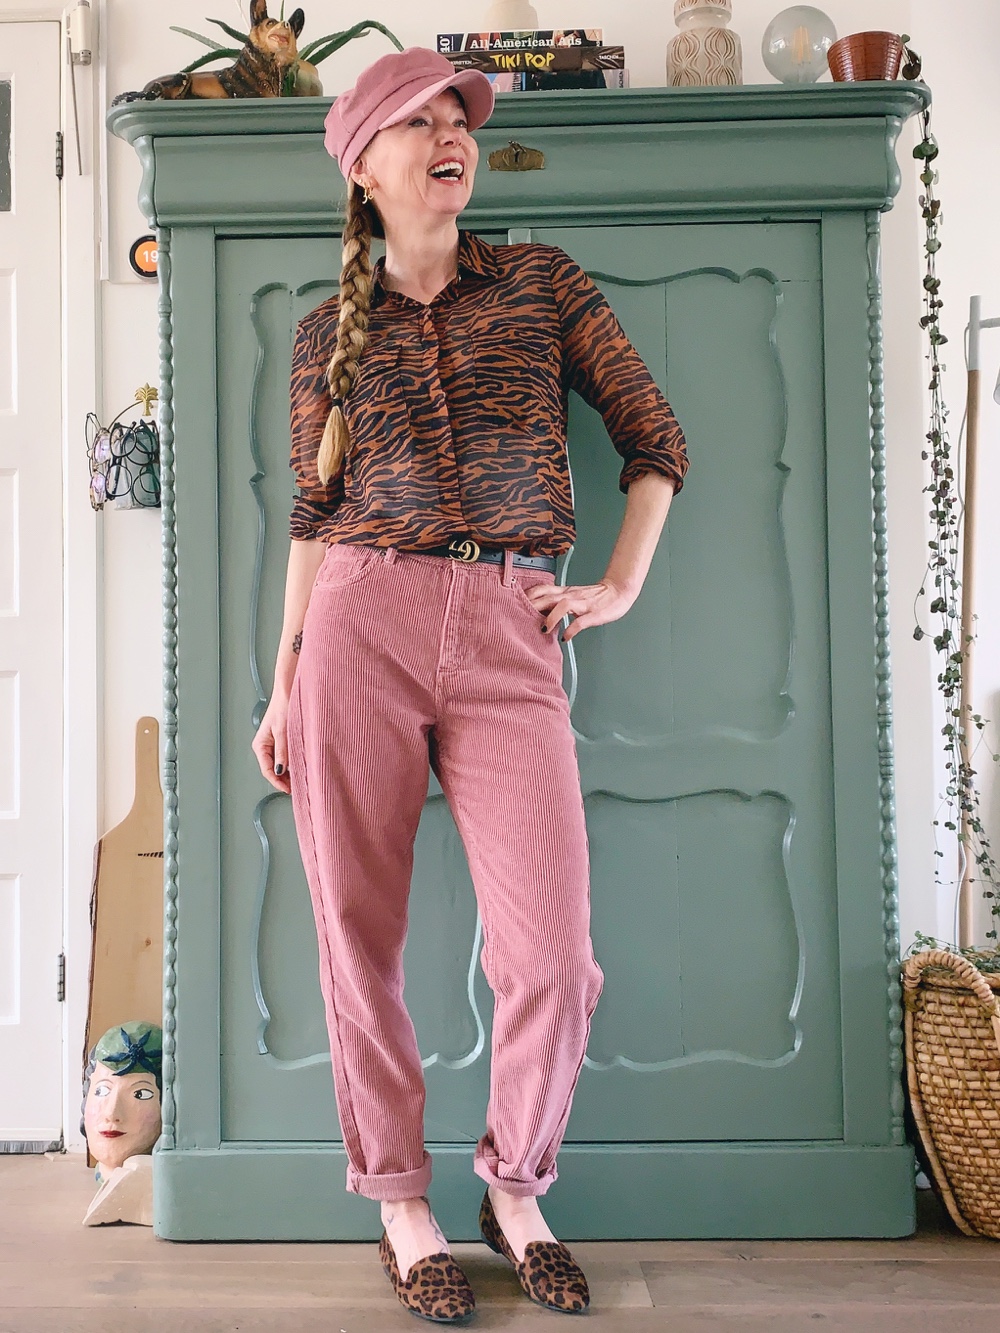 Fashionpost #51: de roze broek, heb 'em (+ combitips) - Hand in Pocket